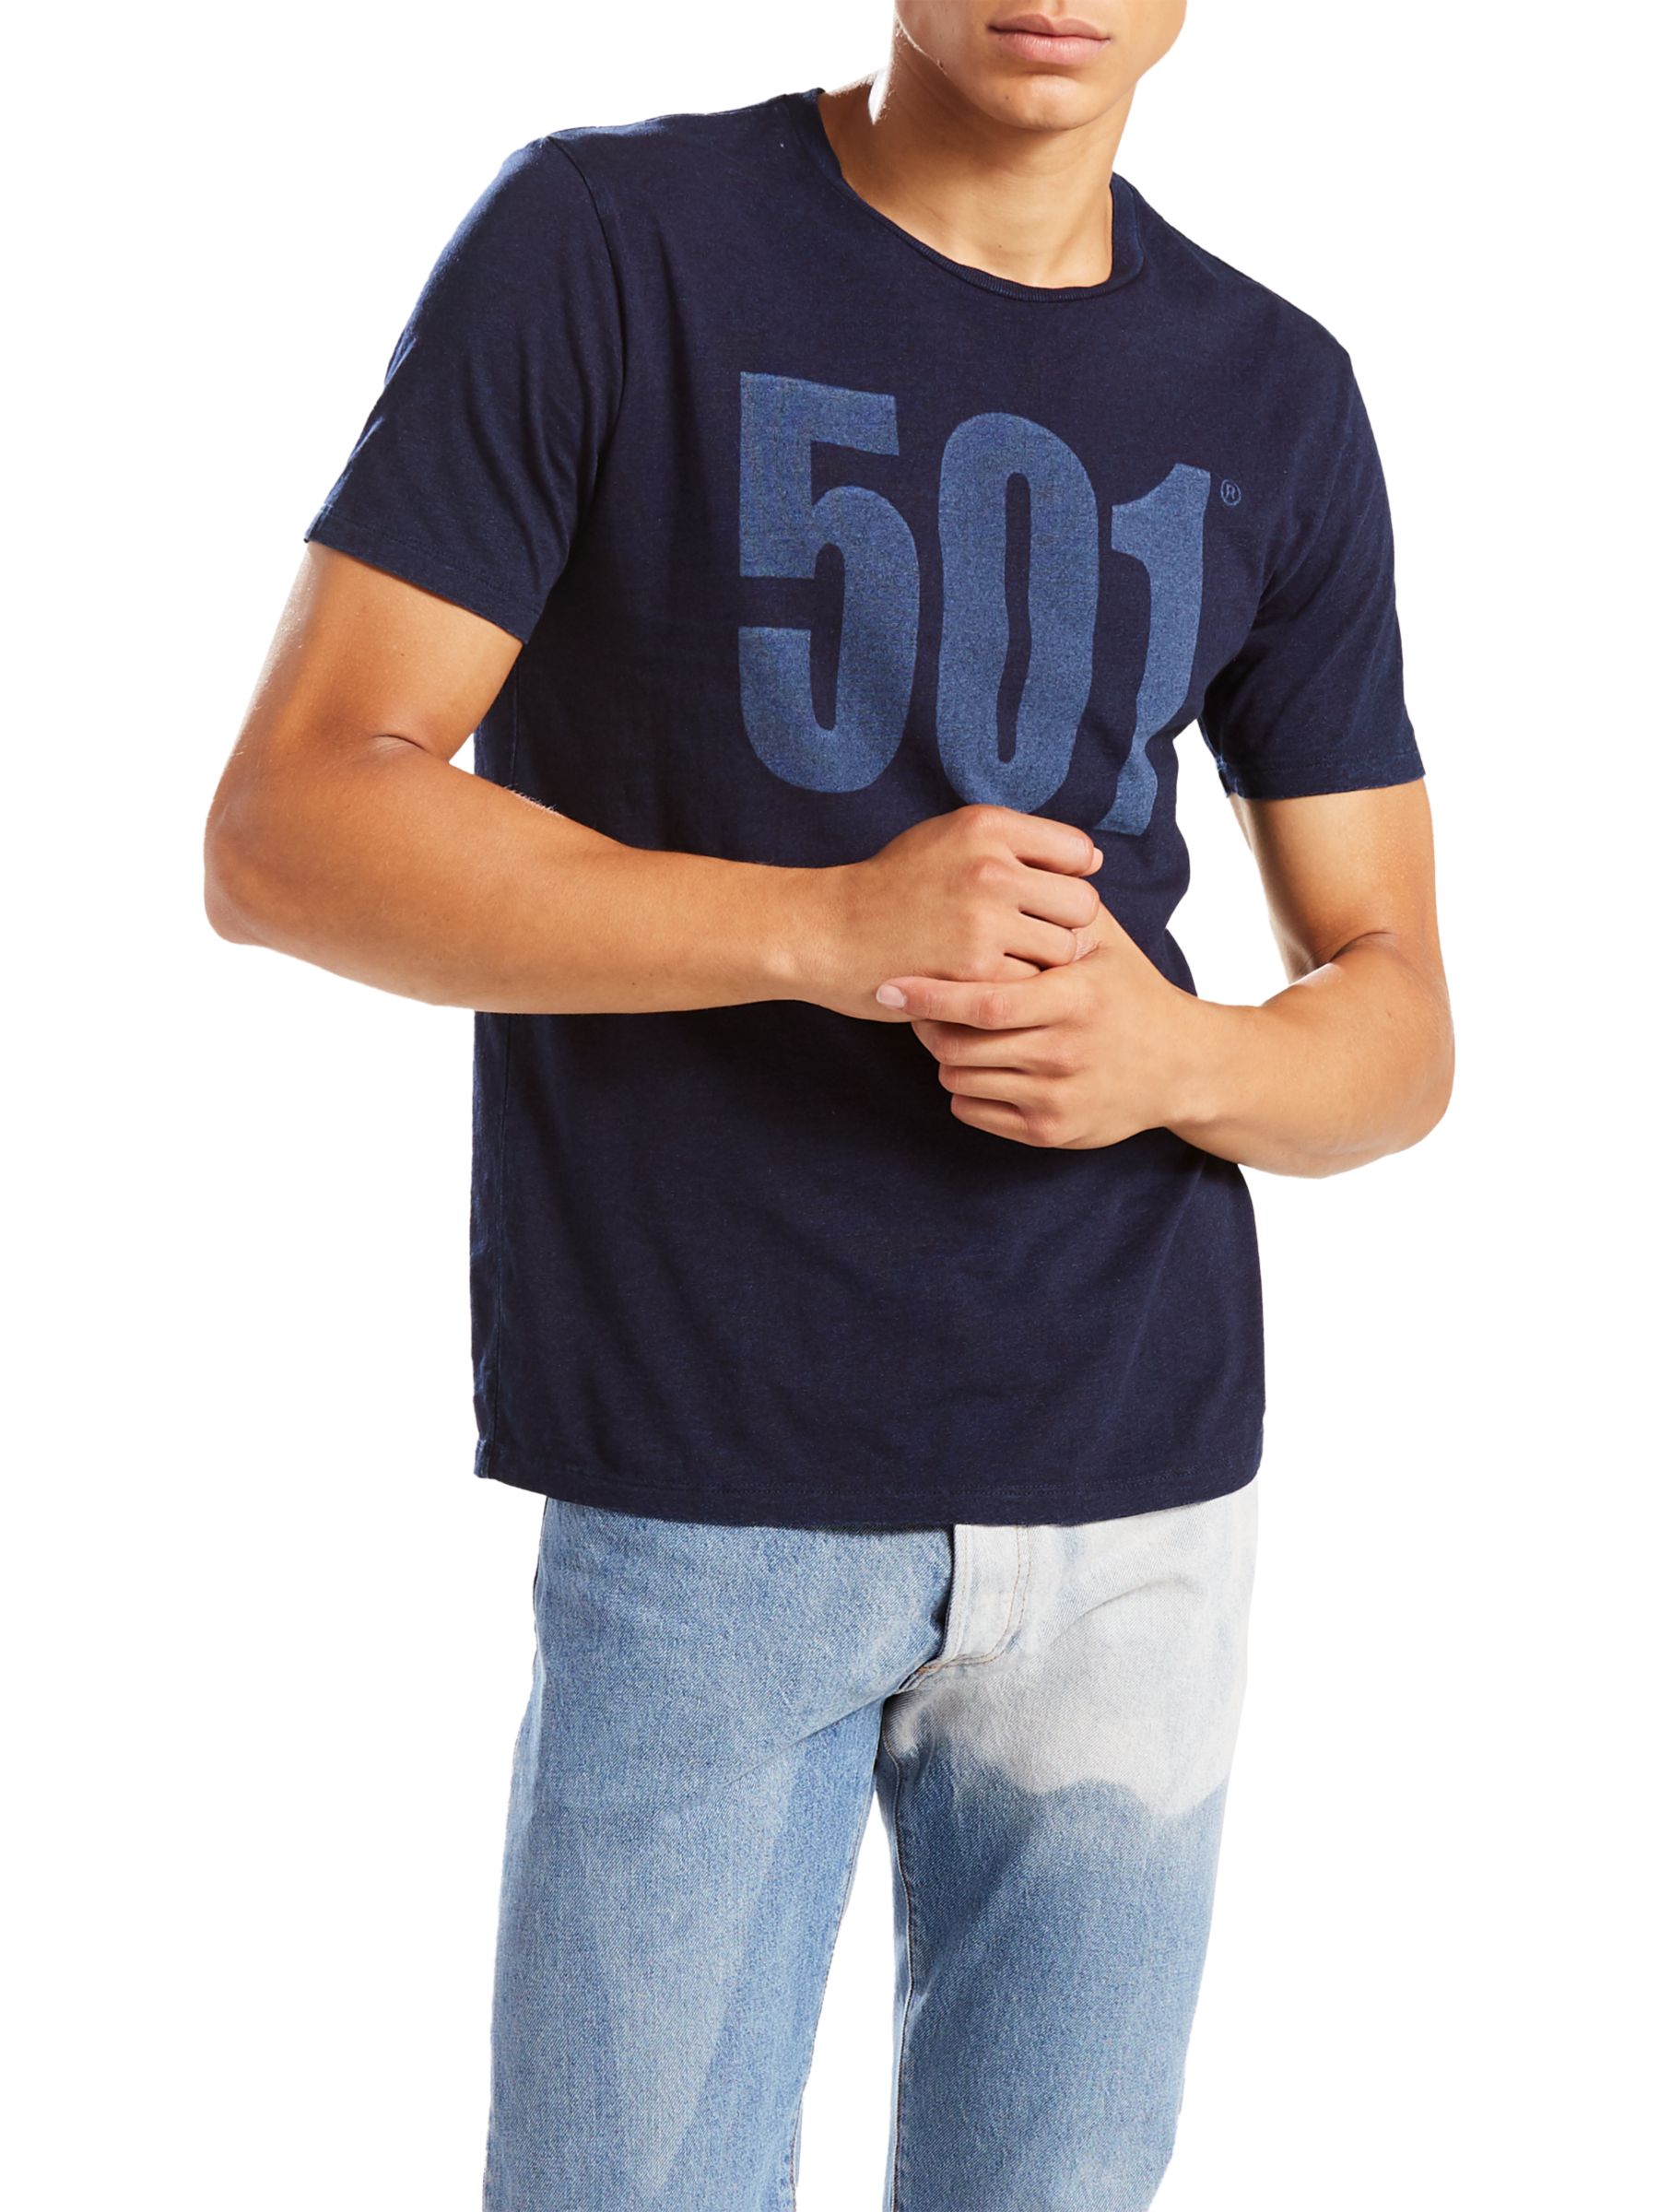 levis 501 tshirt